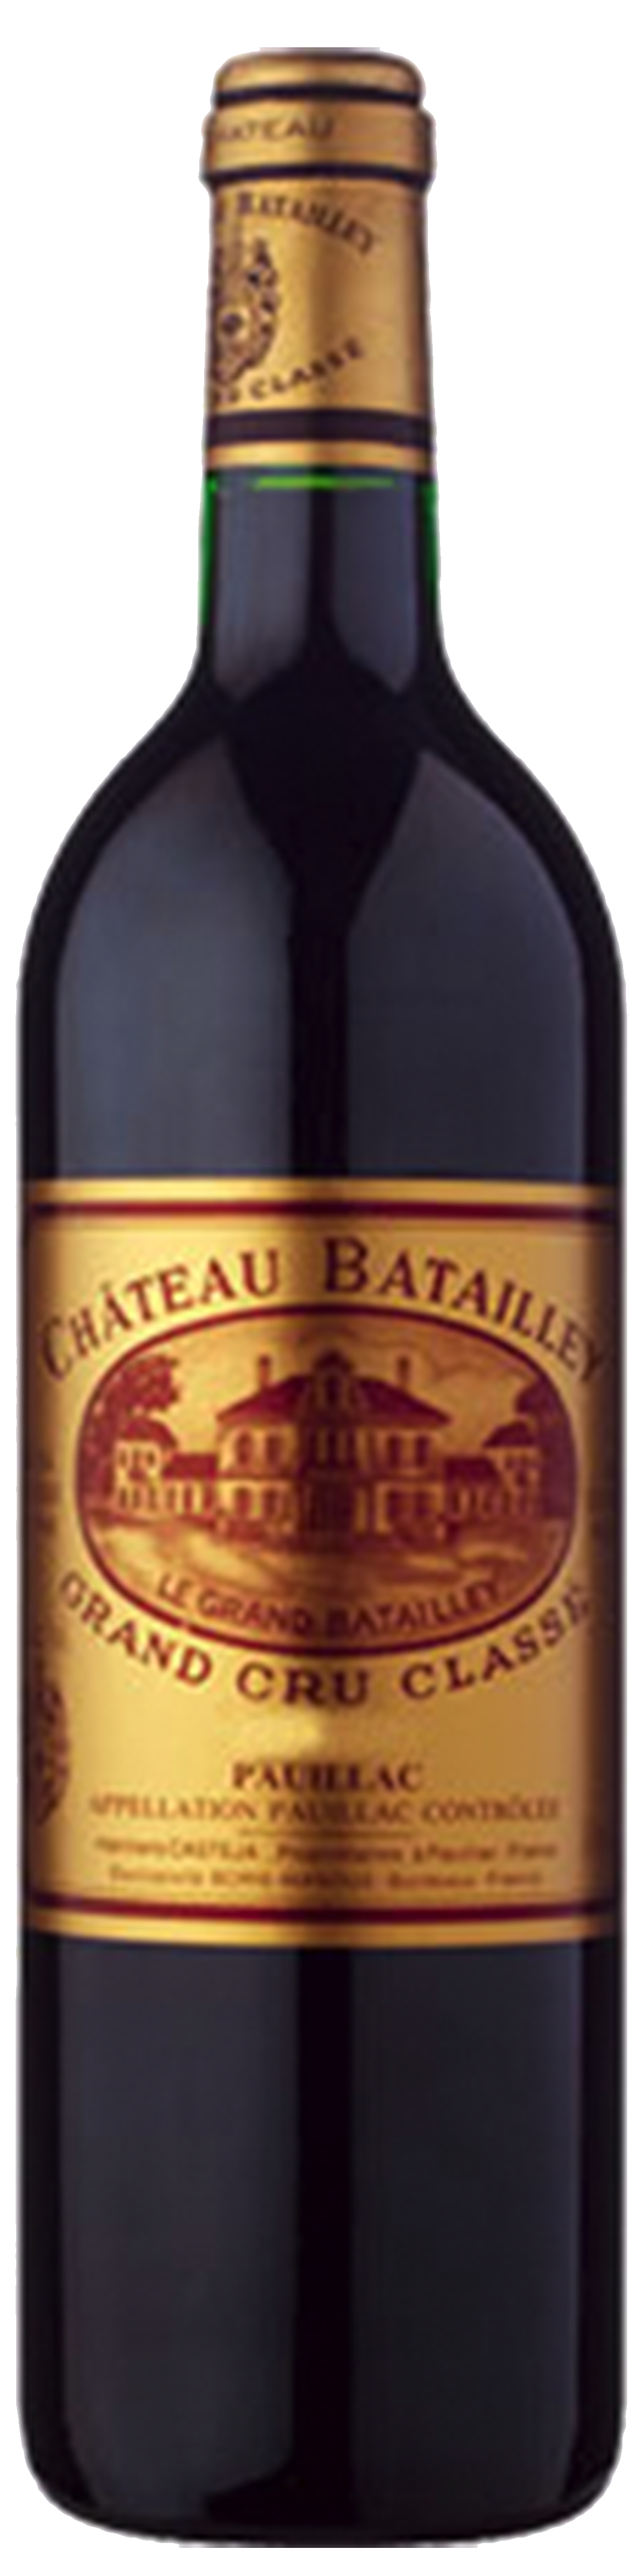 Bottle shot of 2016 Château Batailley, 5ème Cru Pauillac